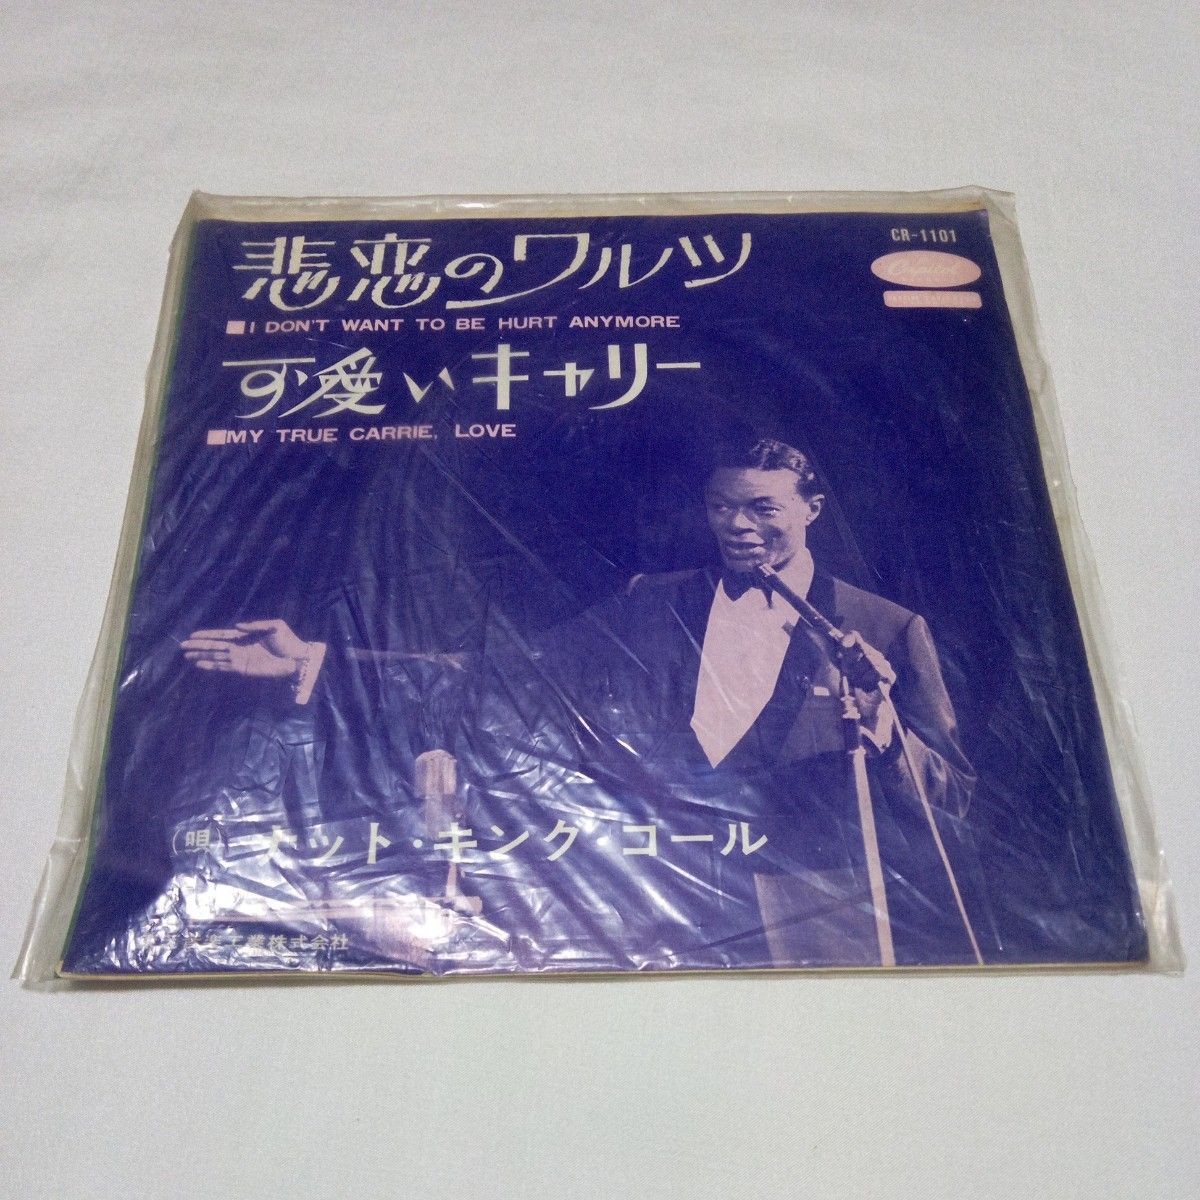 【レコード】NAT KING COLE ナット・キング・コール 悲恋のワルツ 可愛いキャリー 赤いレコード盤 赤盤 